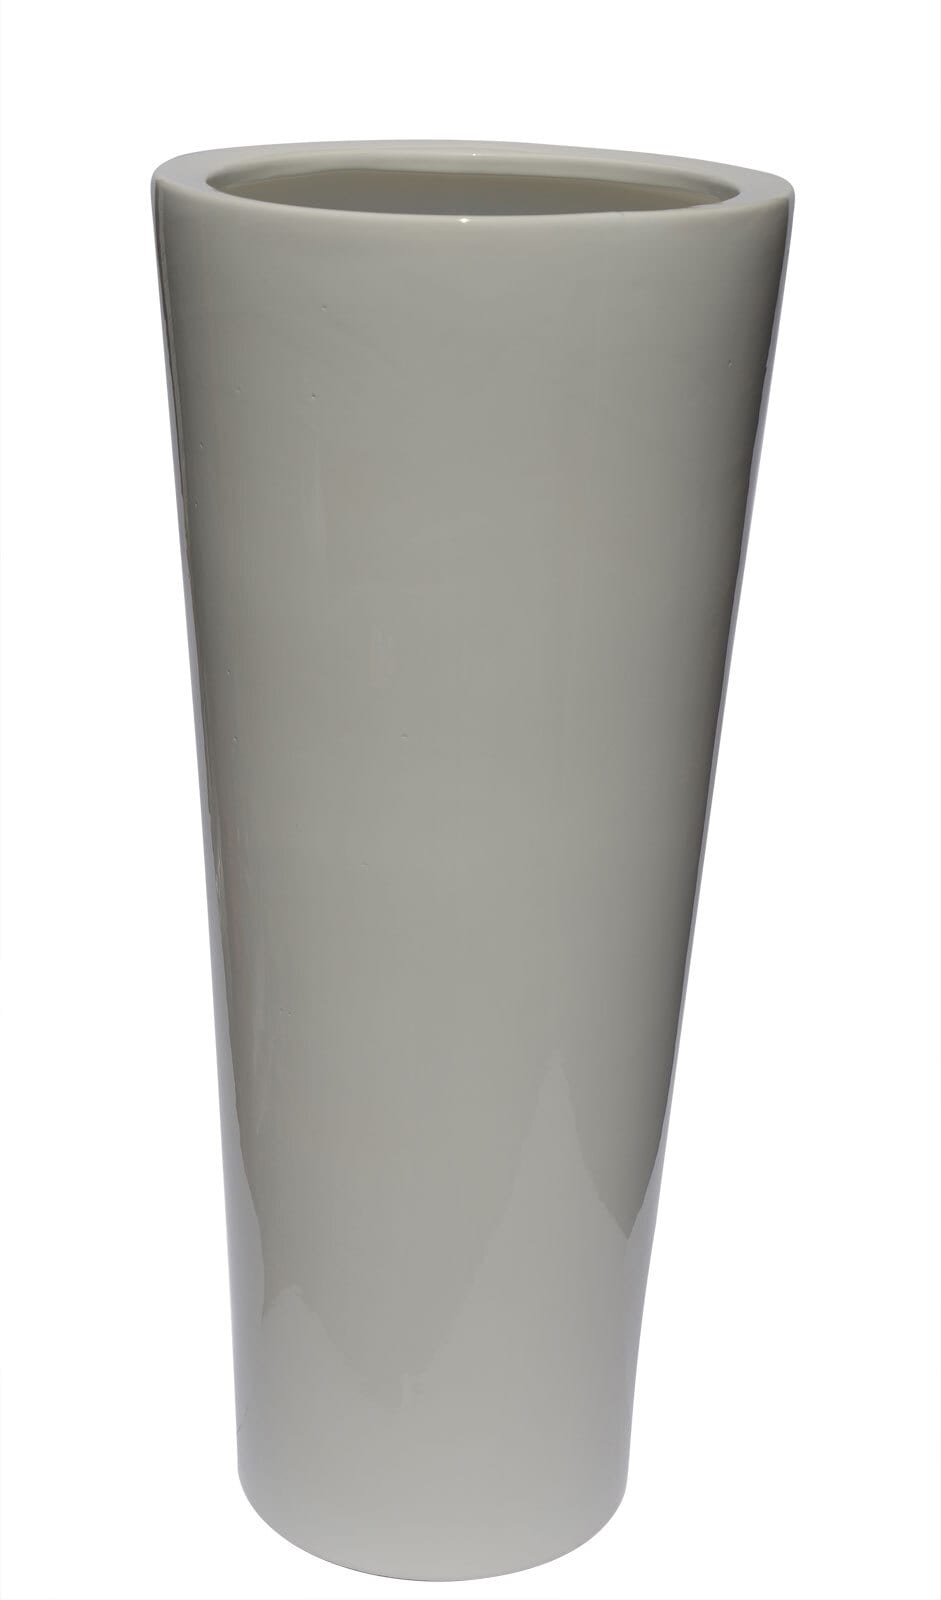 Konische Bodenvase /Vase aus Keramik H 55 /Ø 24 Weiß glänzend